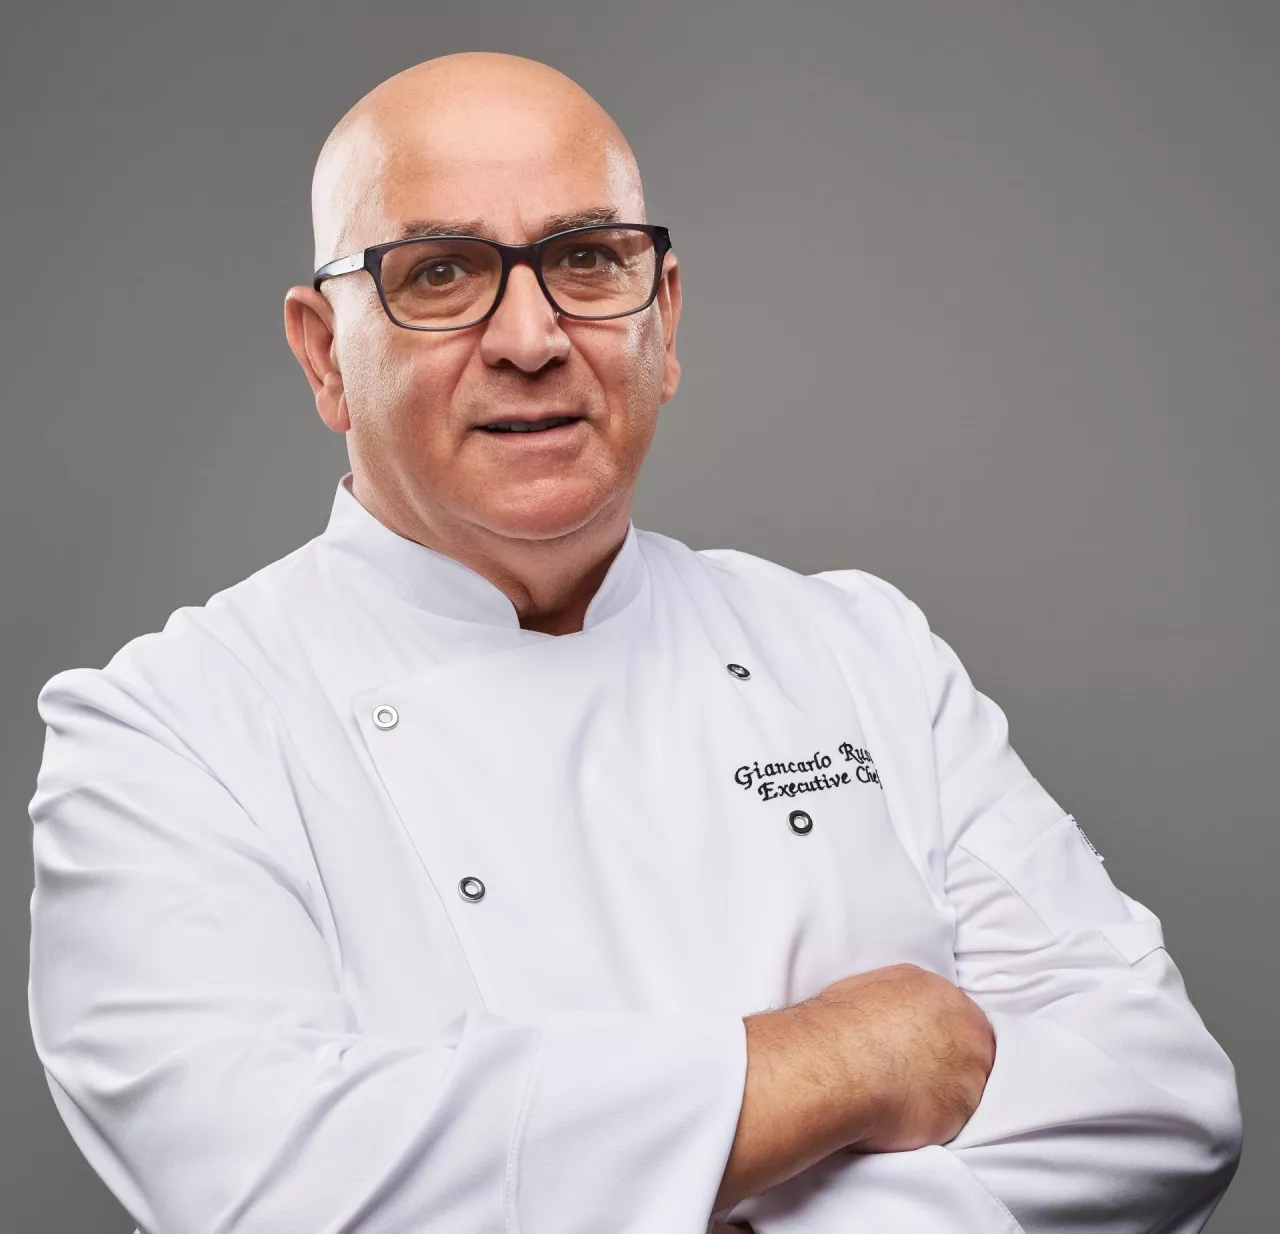 Giancarlo Russo, propagator kuchni włoskiej w branży HoReCa. (fot. materiał partnera)